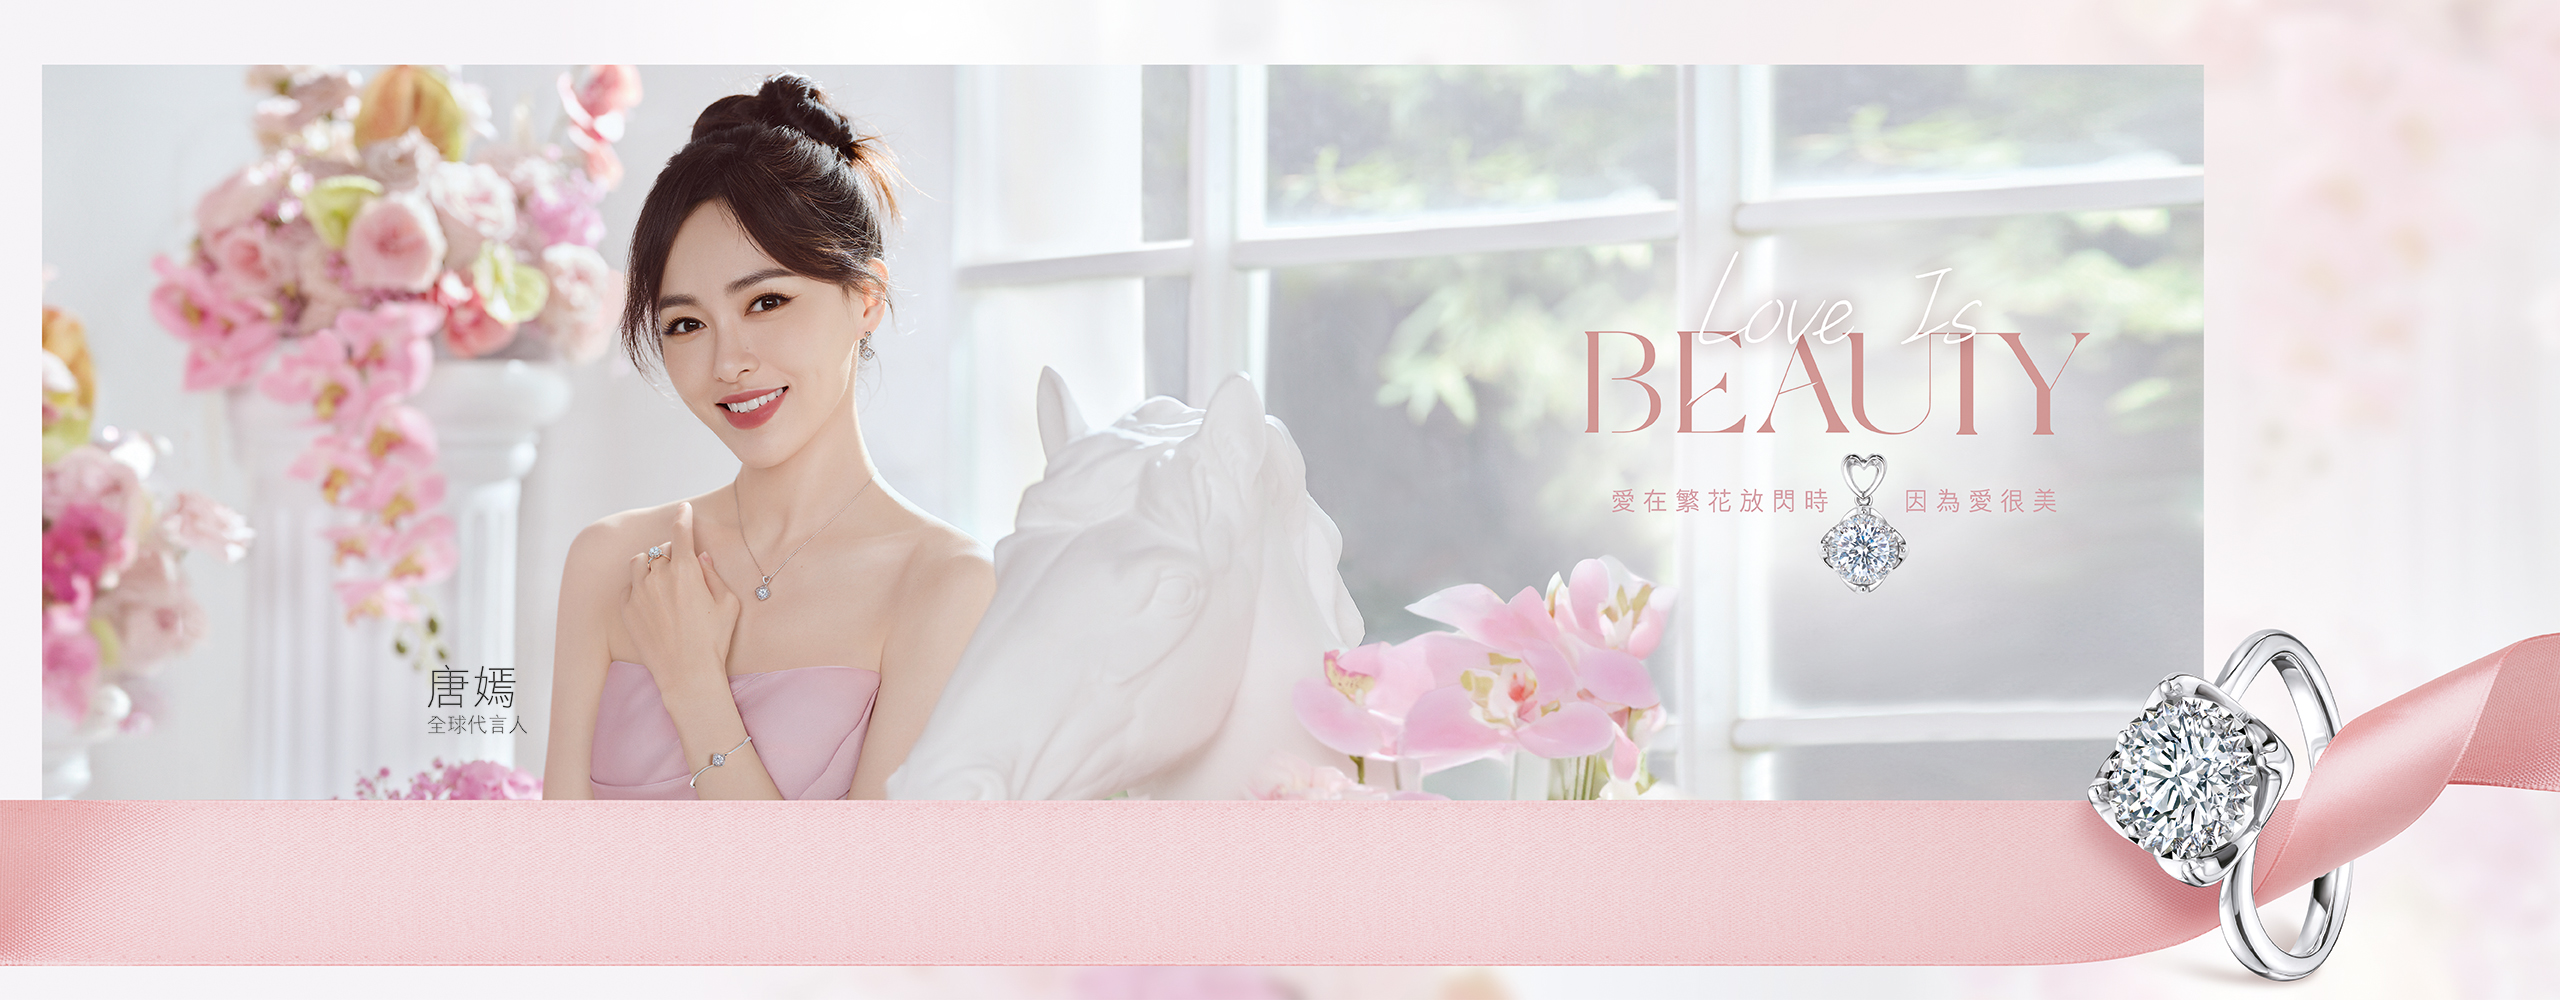 六福珠寶 - Love is Beauty | 愛很美系列  Banner